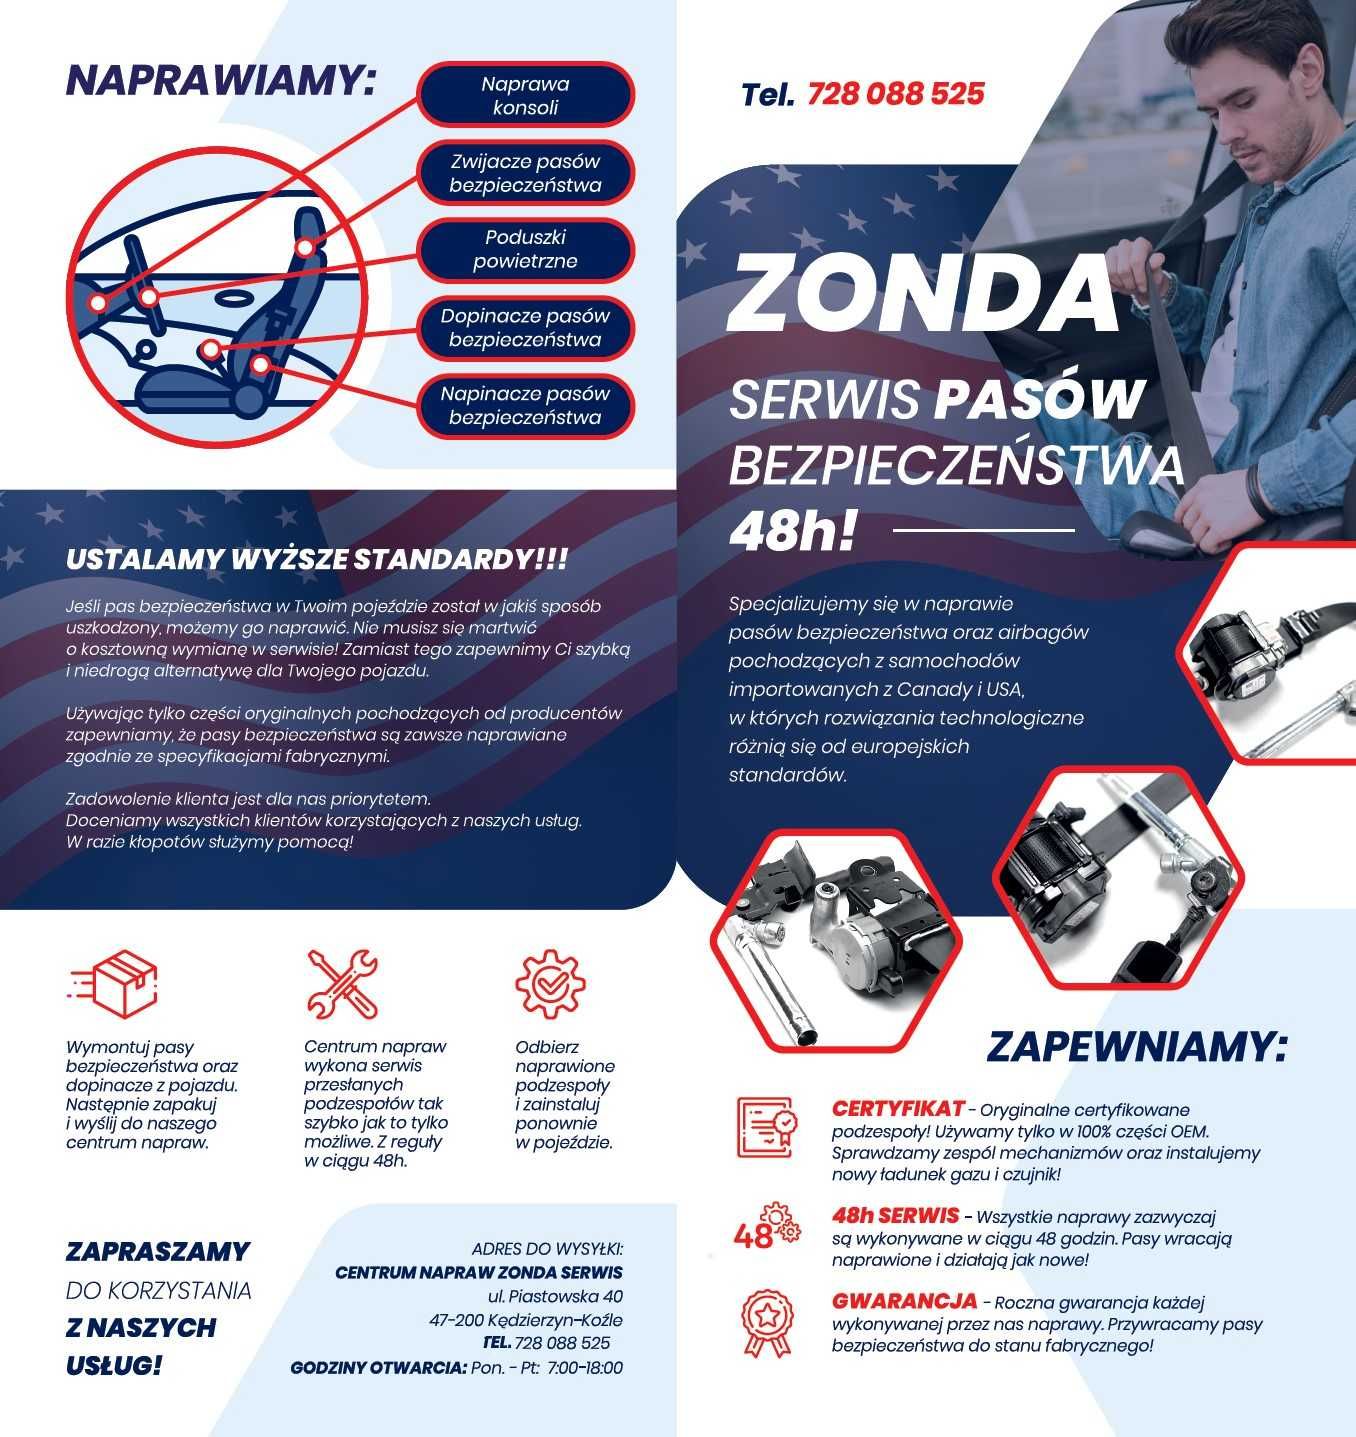 ZONDA Serwis naprawa pasów bezpieczeństwa (naprawa regeneracja pasów)